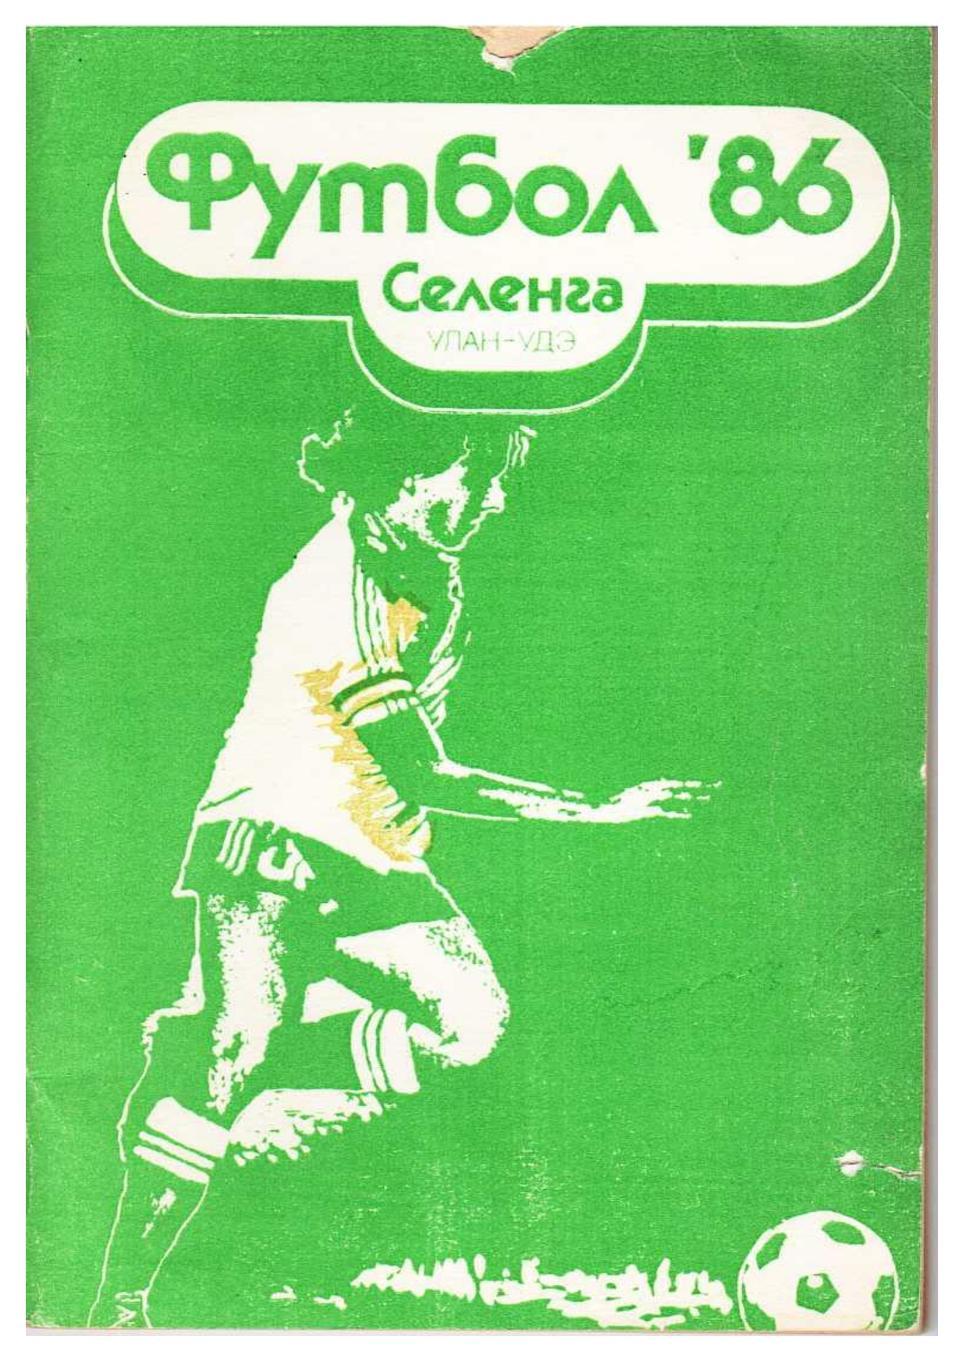 Футбол 86. Селенга (Улан-Удэ). Футбольный справочник. Улан-Удэ 1986.